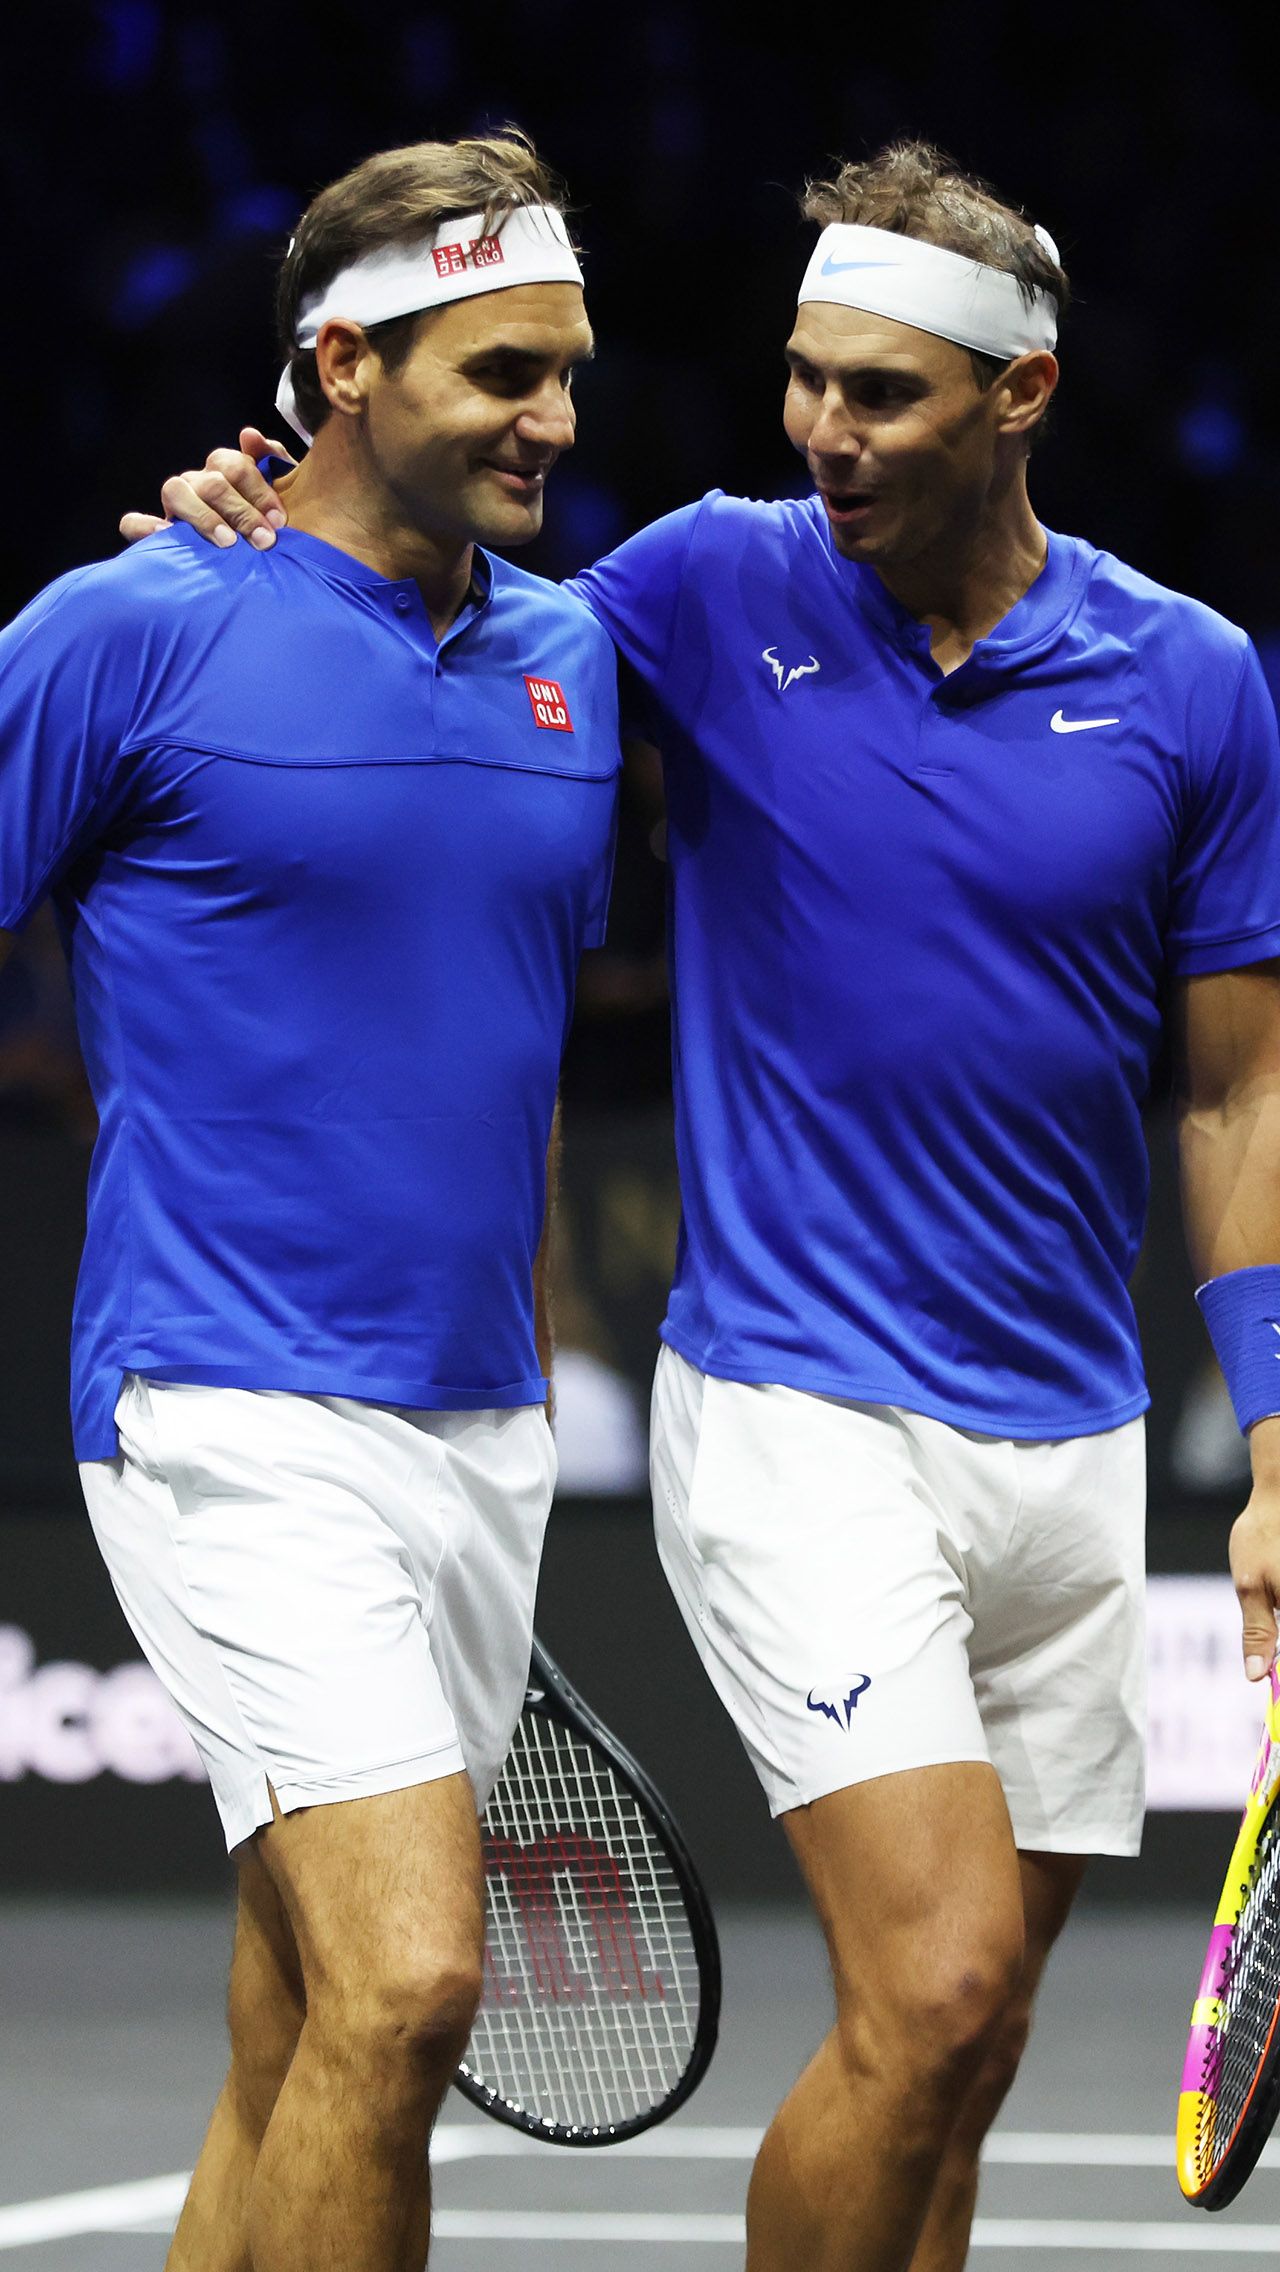 Ближайшие преследователи Надаль и Федерер отстают от серба более чем на $ 30 млн, не говоря уже о других теннисистах.